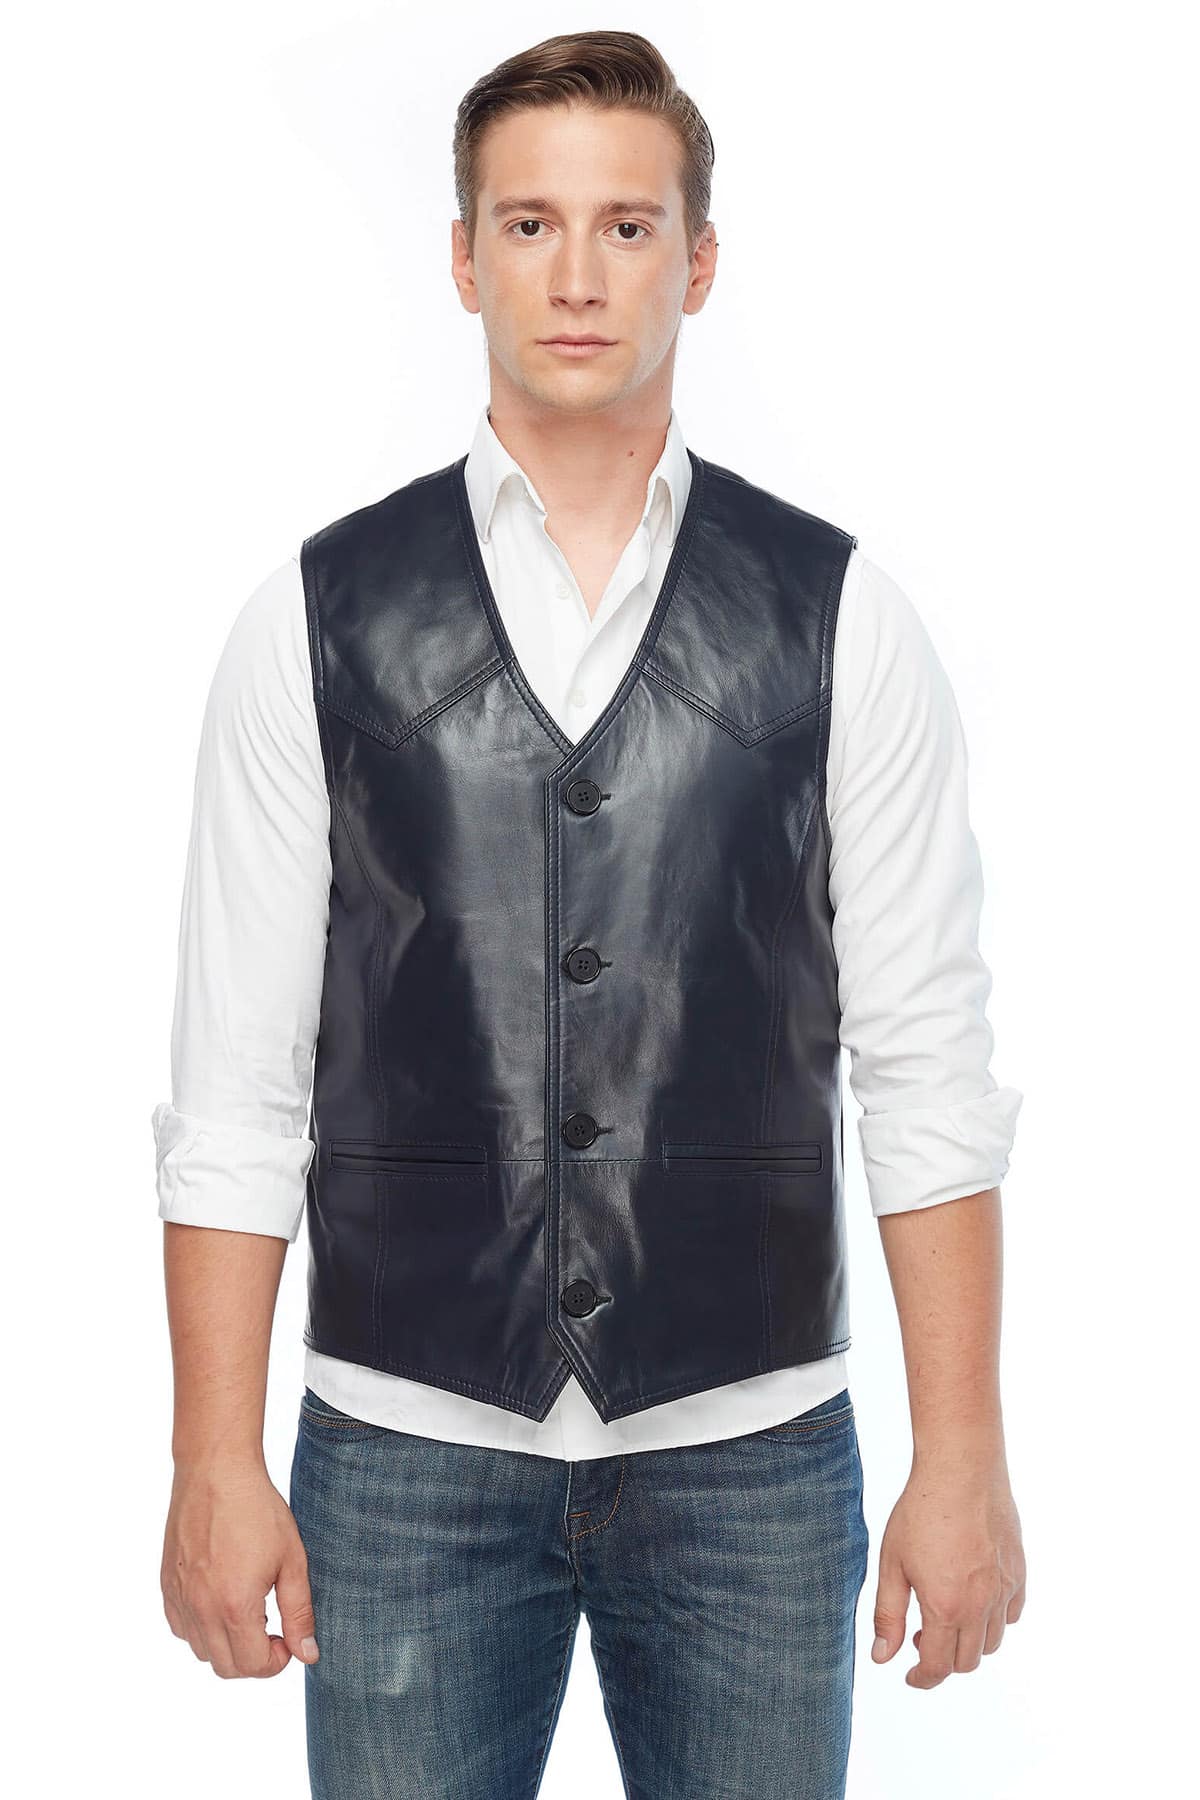 Jack Guinness Men's 100 % Real Navy-Blue Leather Vest